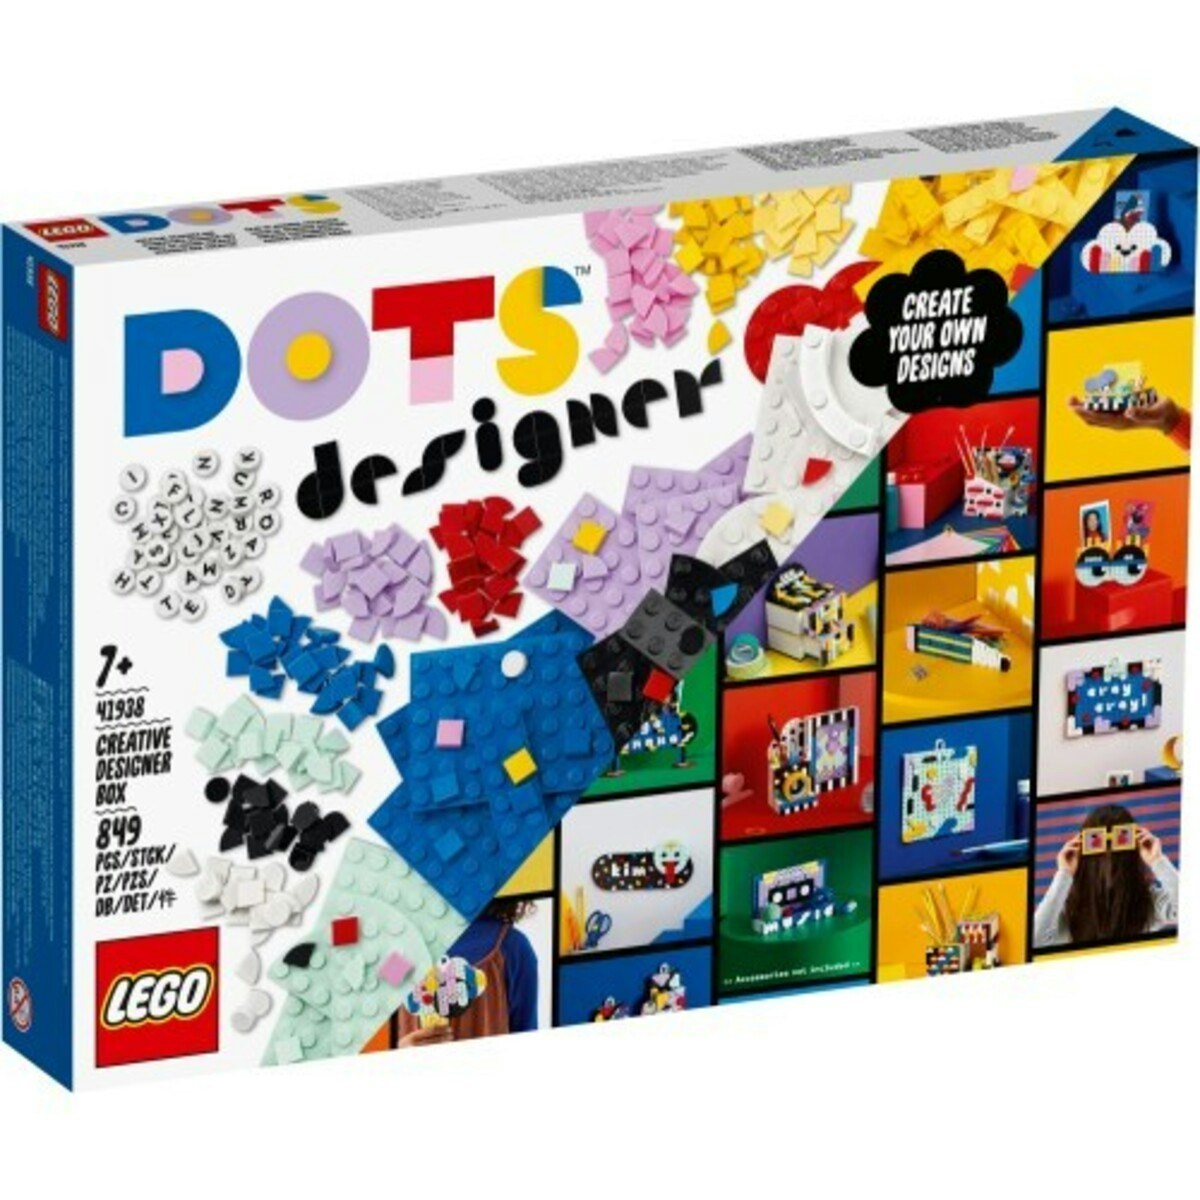 レゴ ドッツ クリエイティブデザインボックス